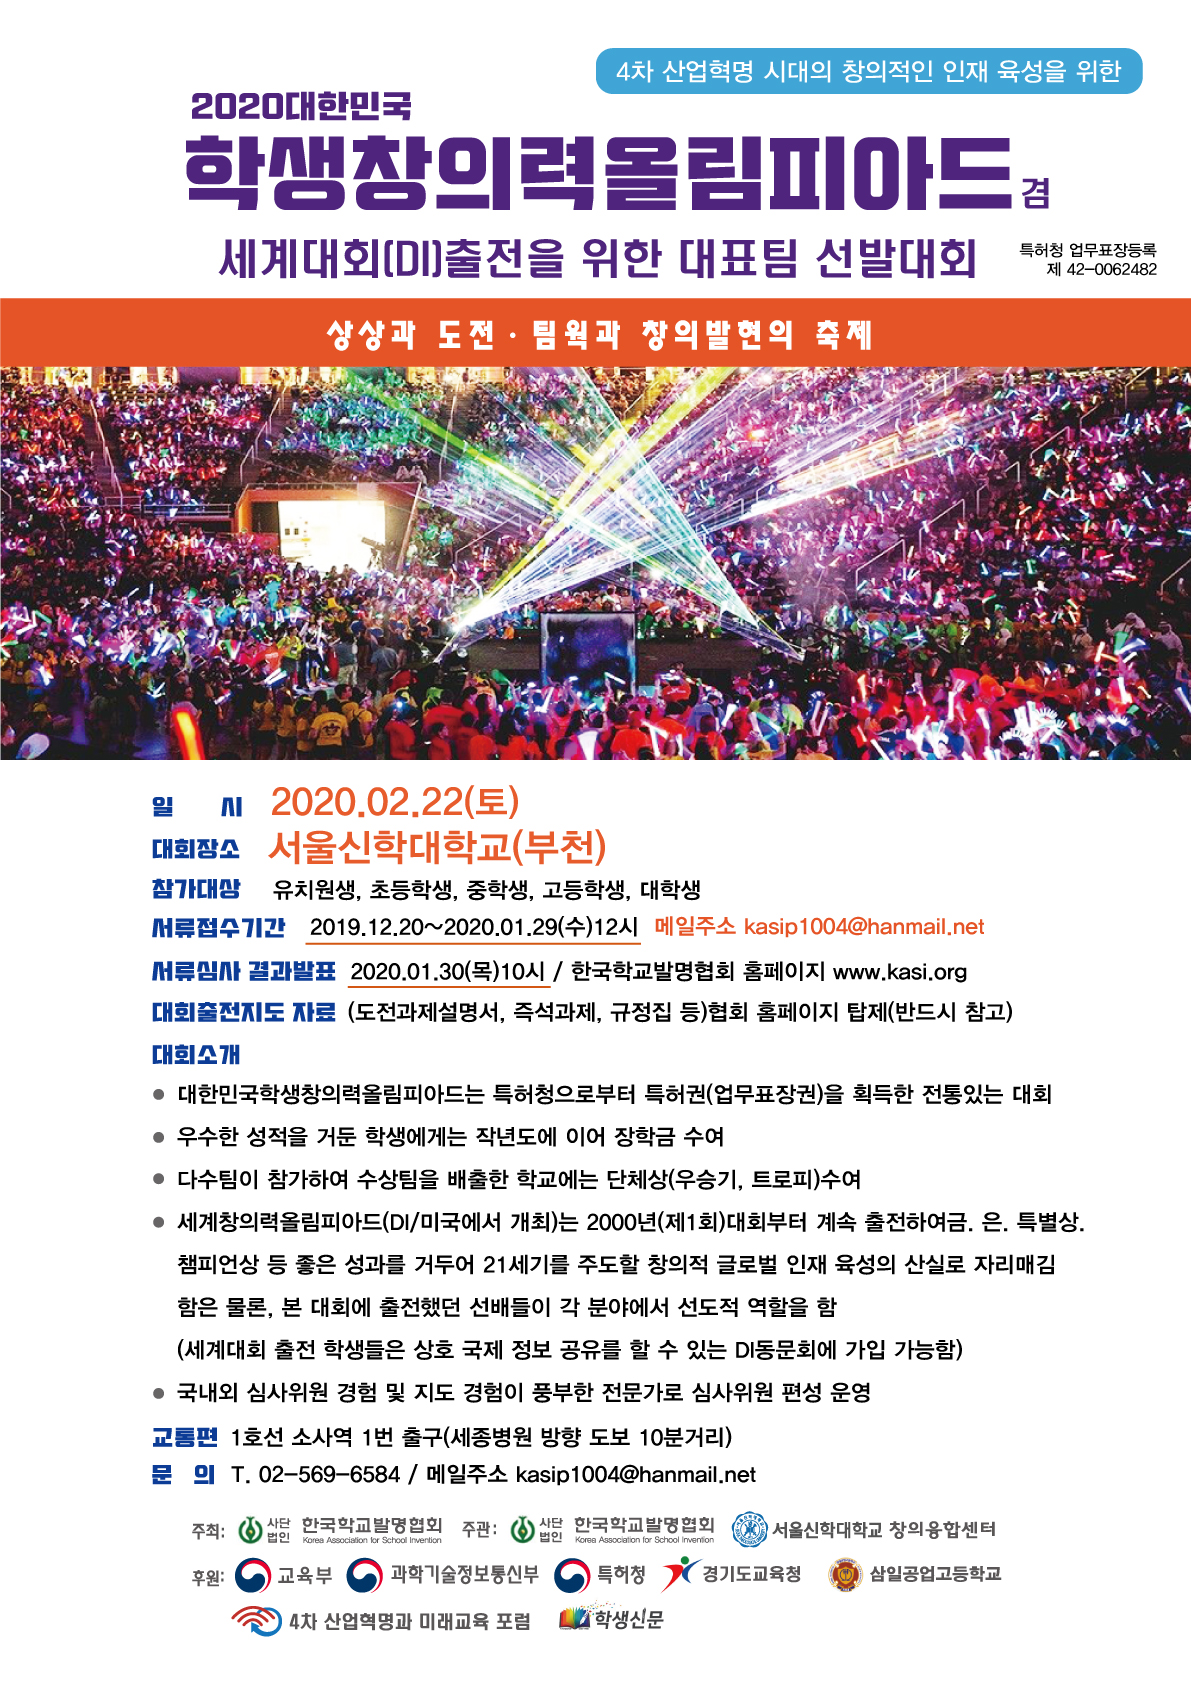 삼일공업고등학교_2020대한민국학생창의력올림피아드 포스터(최종)